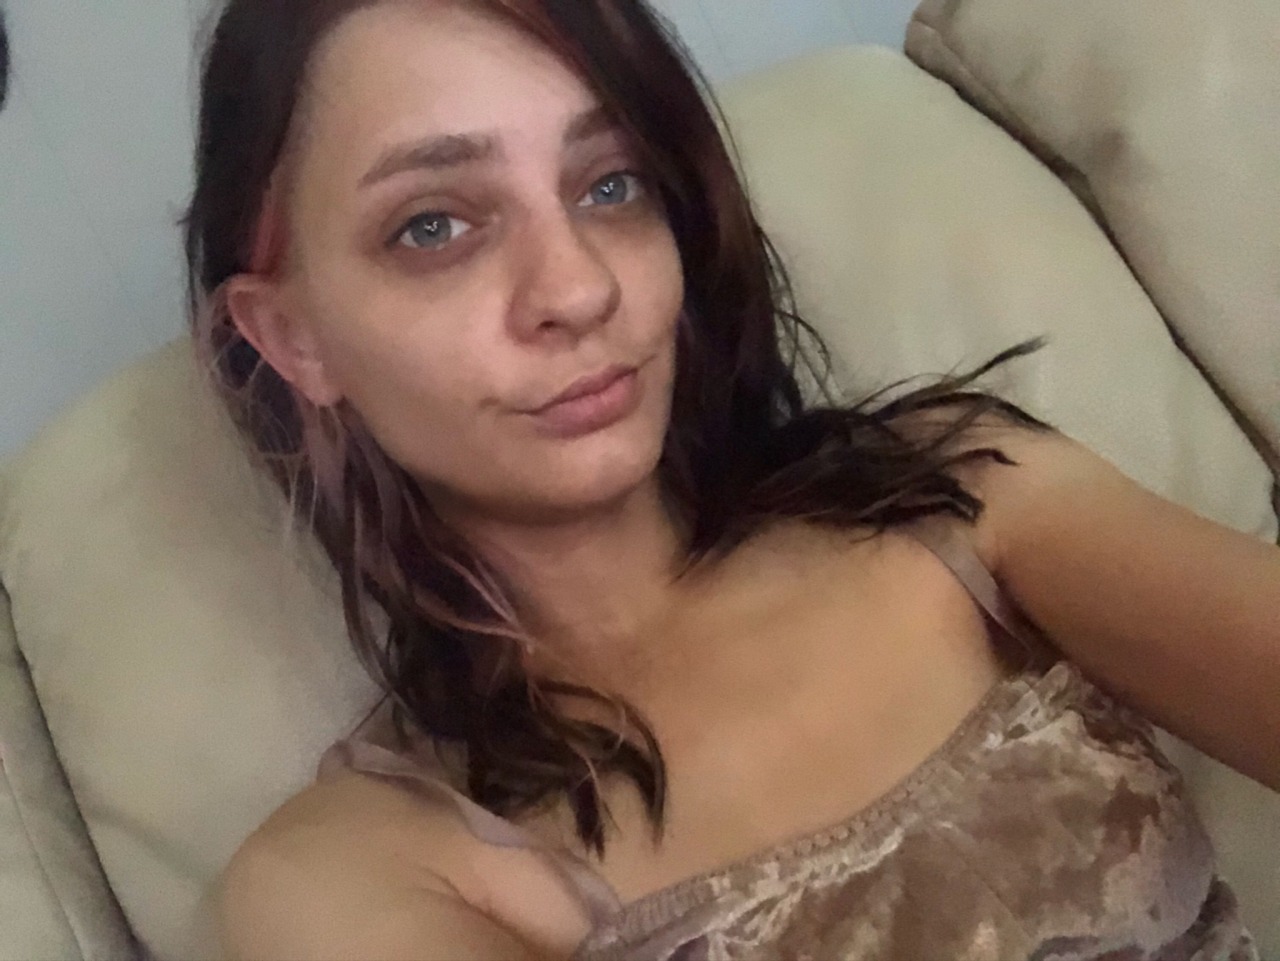 Porn photo violet-thorne-model:No makeup for once! I’m